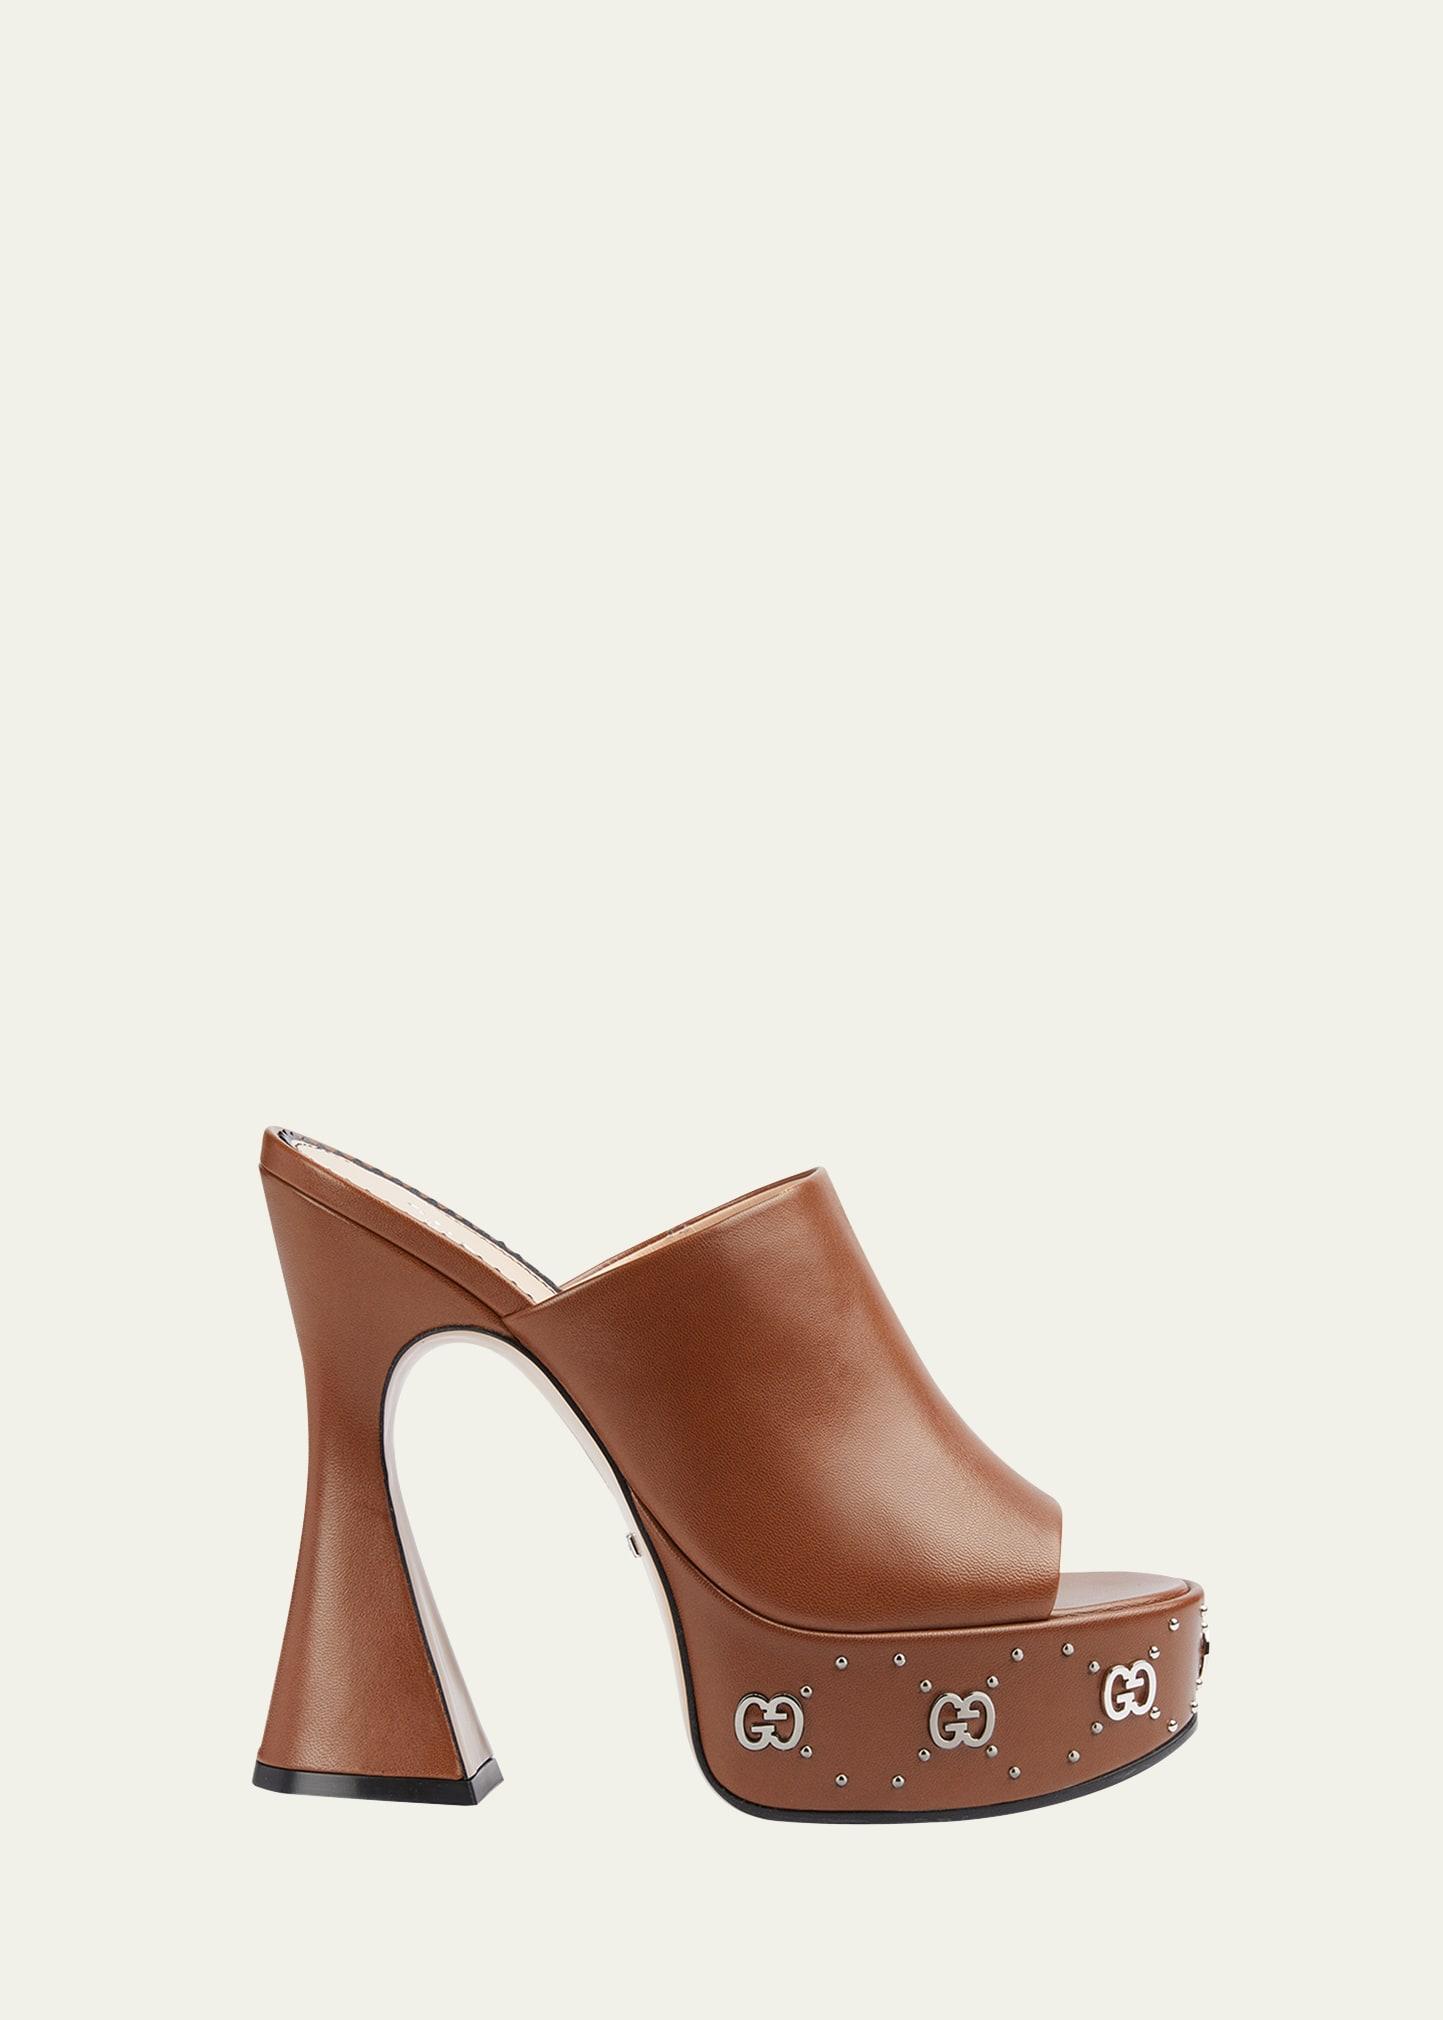 Gucci 115mm Janaya Platform Leather Slide Sandals in Natural | Lyst